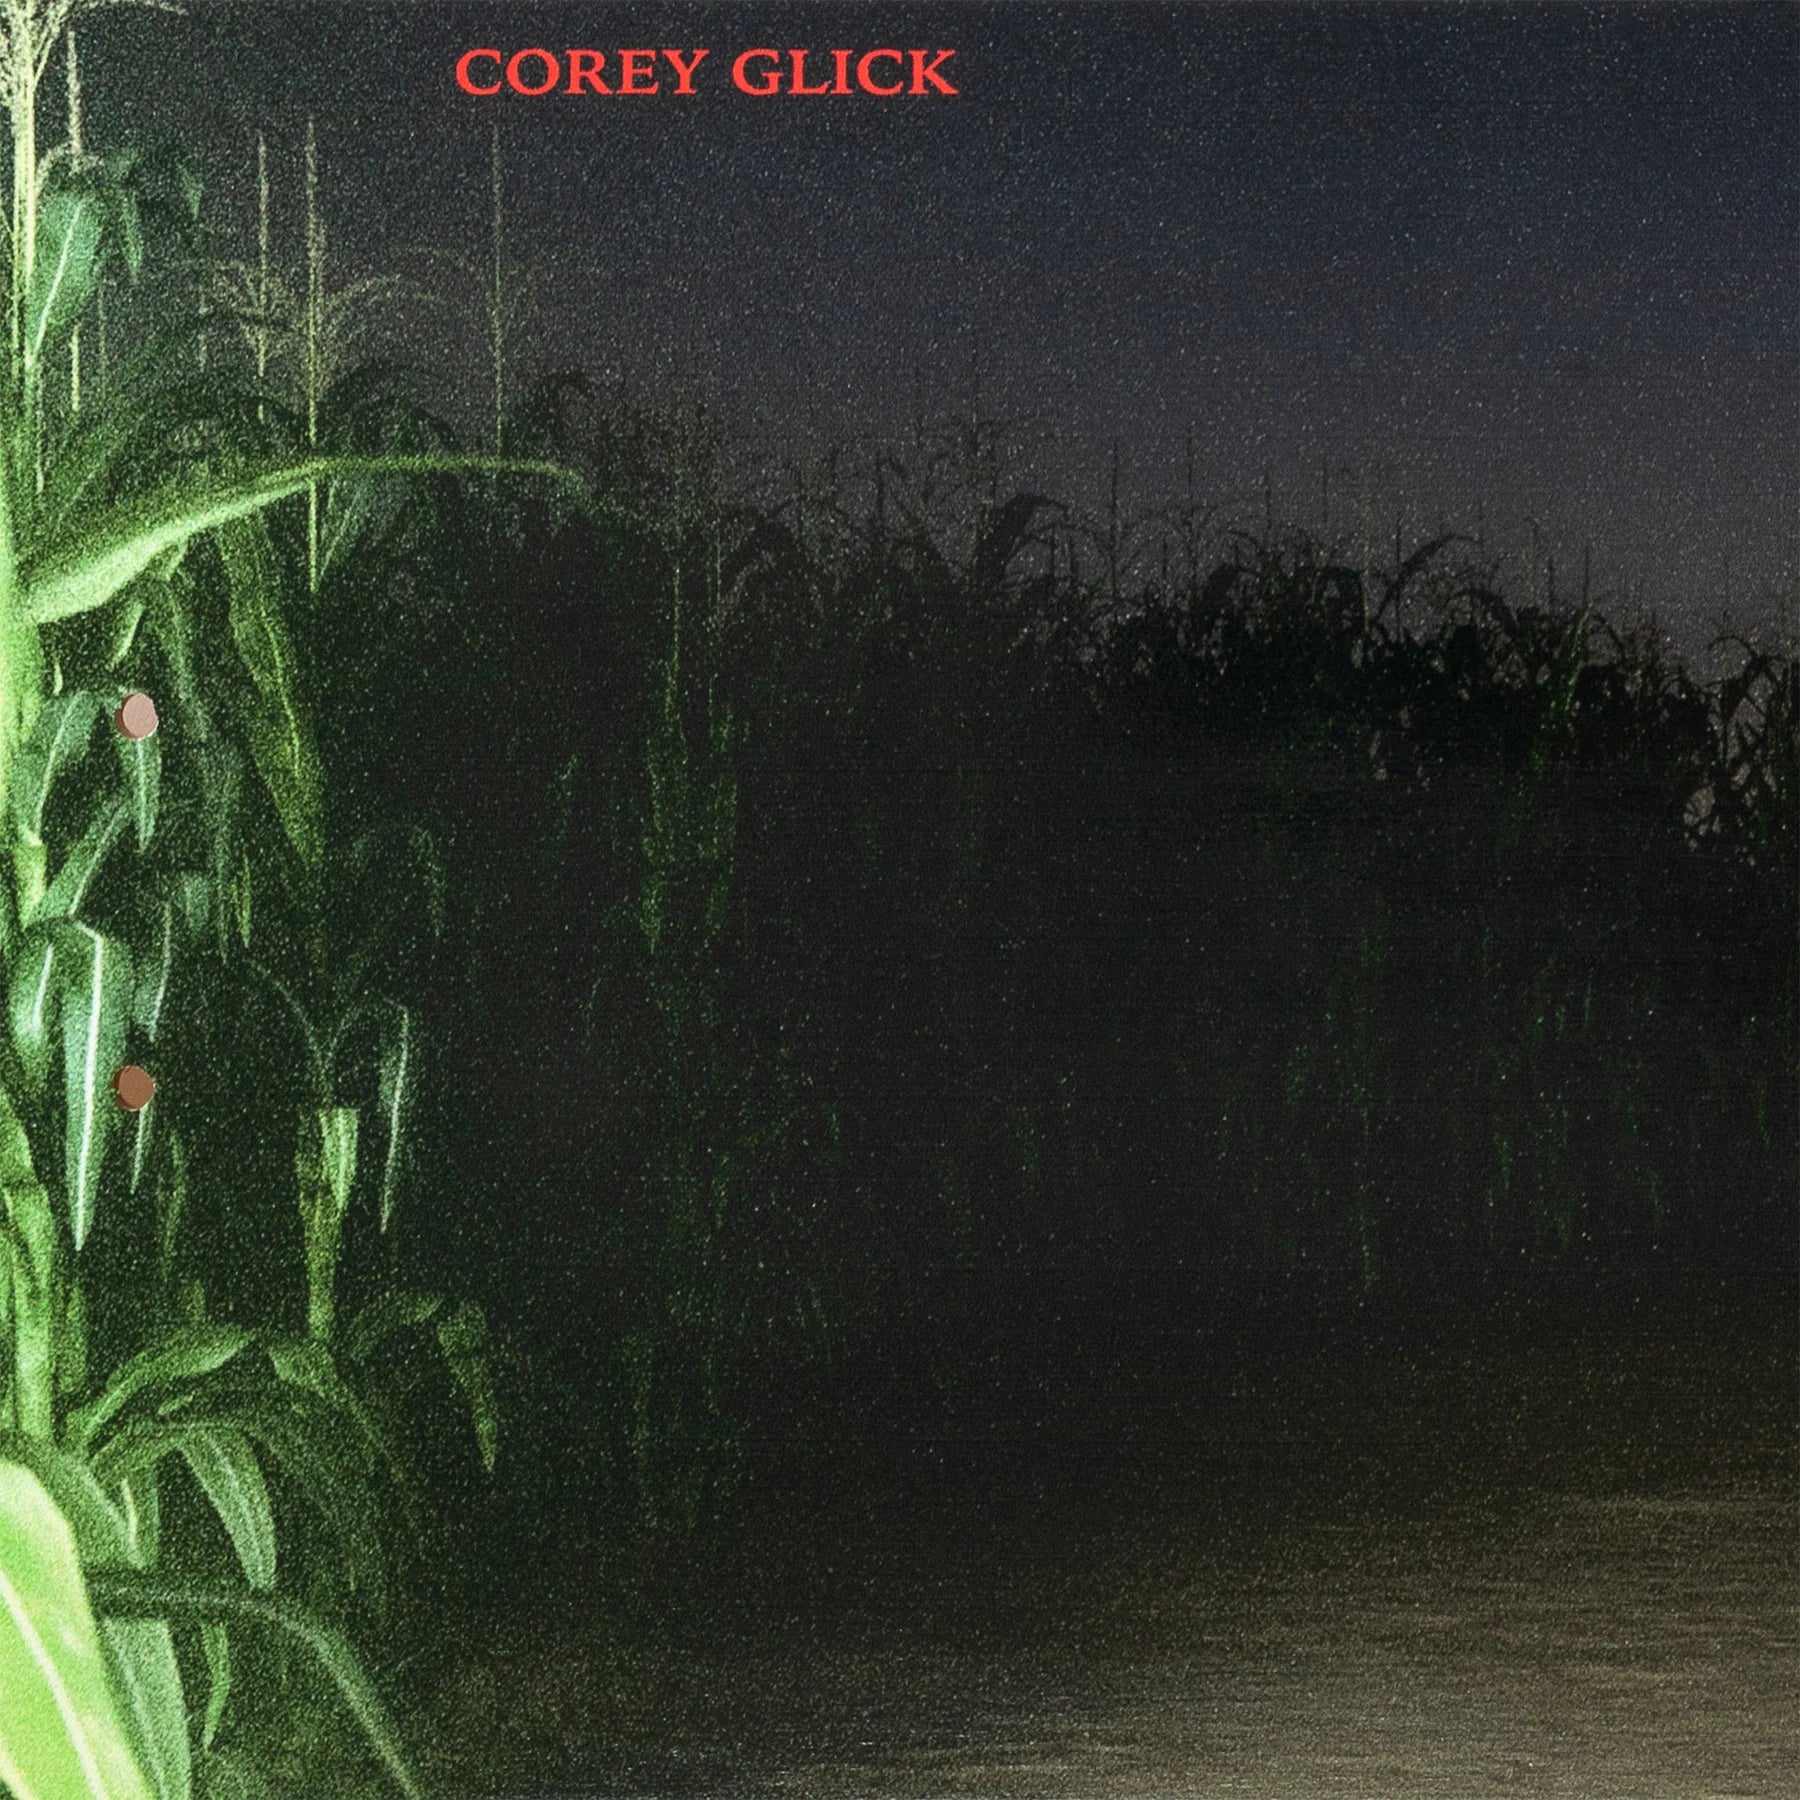 sci-fi fantasy corey glick cornfield deck 8.25"